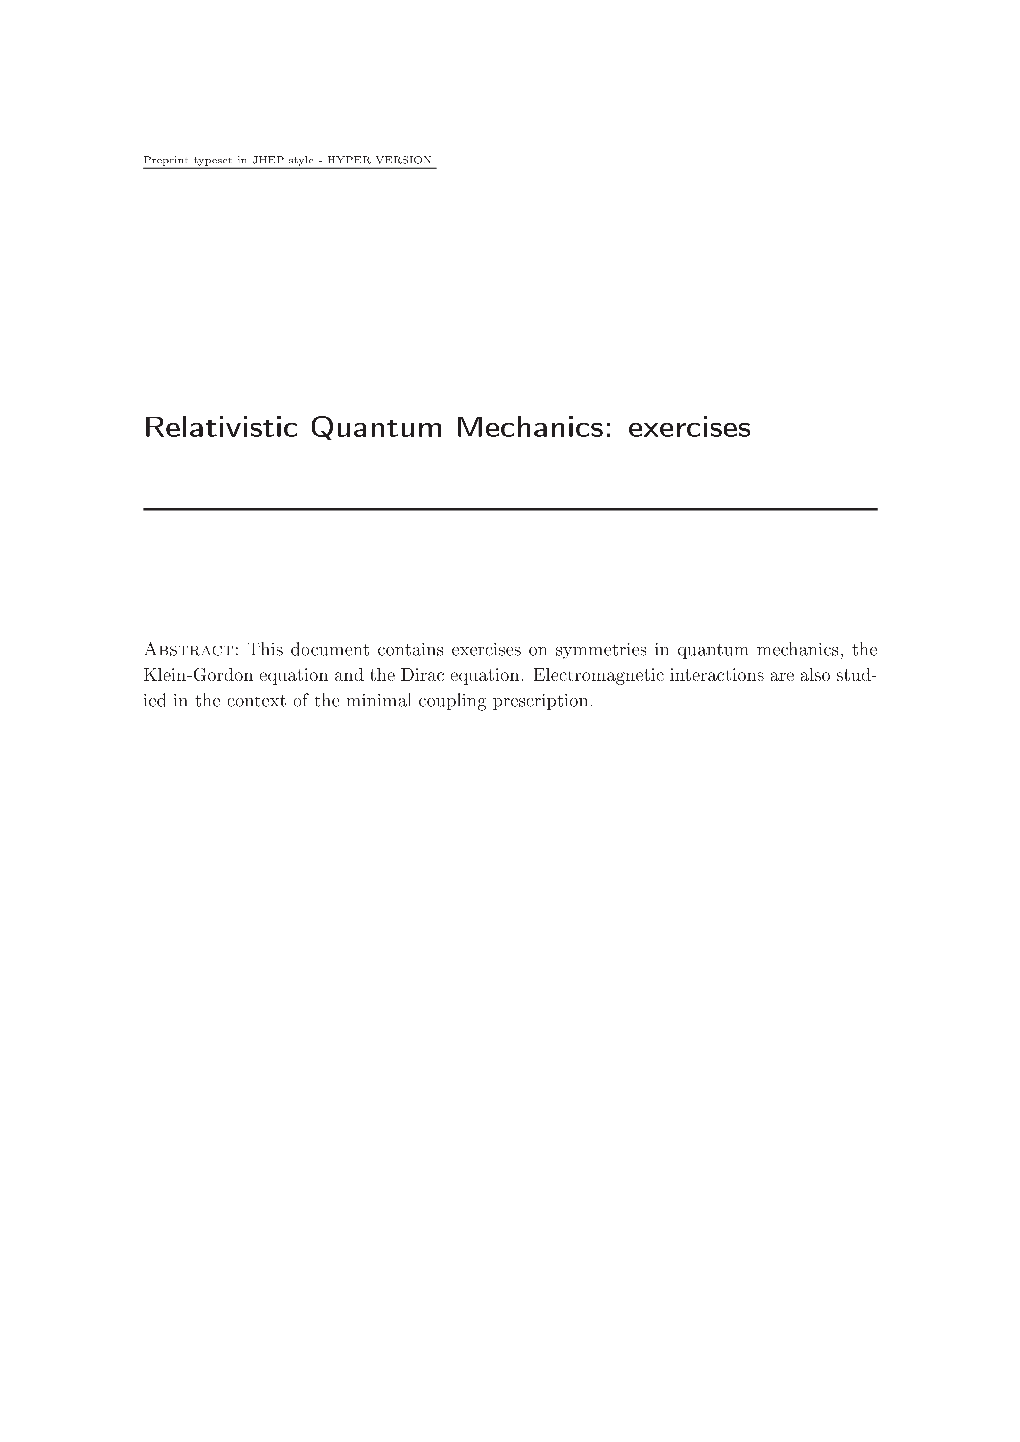 Relativistic Quantum Mechanics: Exercises